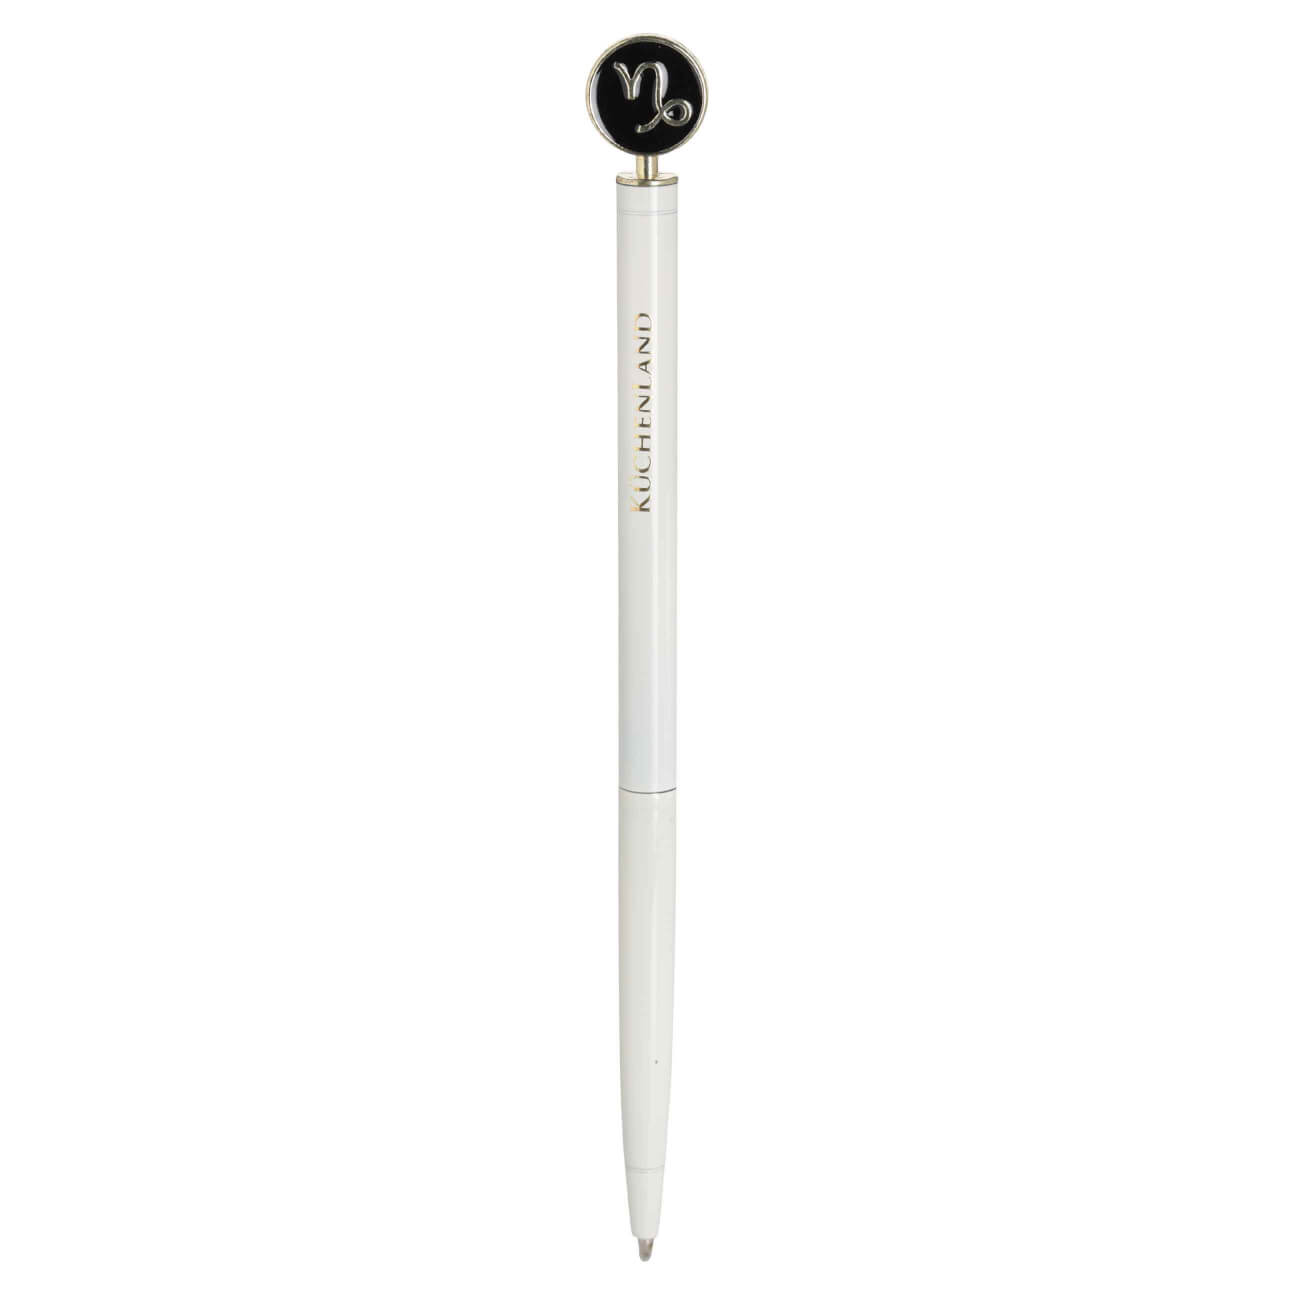 Ручка шариковая, 15 см, с фигуркой, сталь, молочно-золотистая, Козерог, Zodiac ручка подарочная шариковая автоматическая